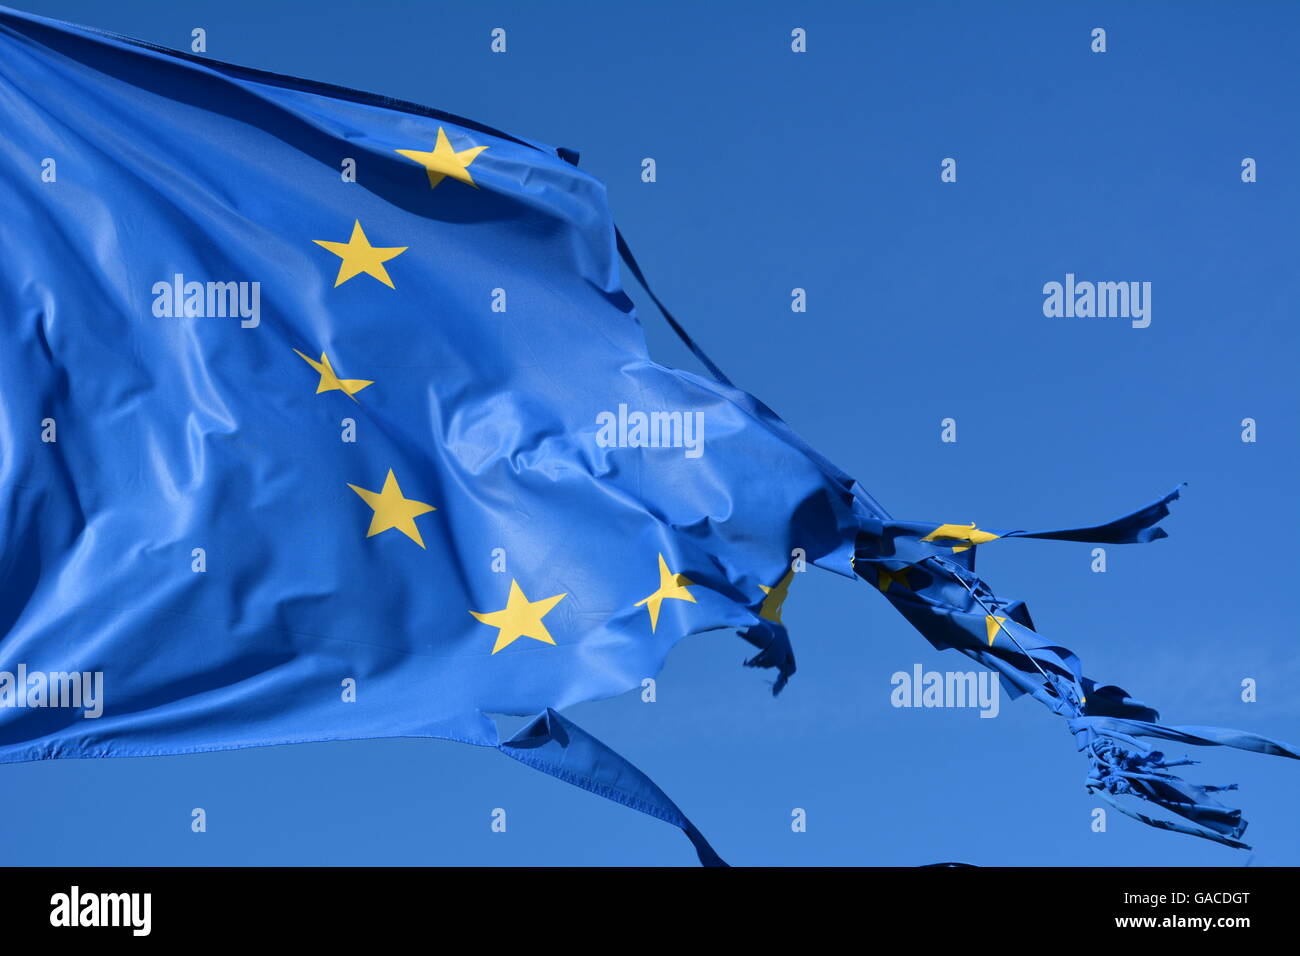 L'Unione europea dodici stelle bandiera strappata e con nodi di vento sul cielo blu Foto Stock